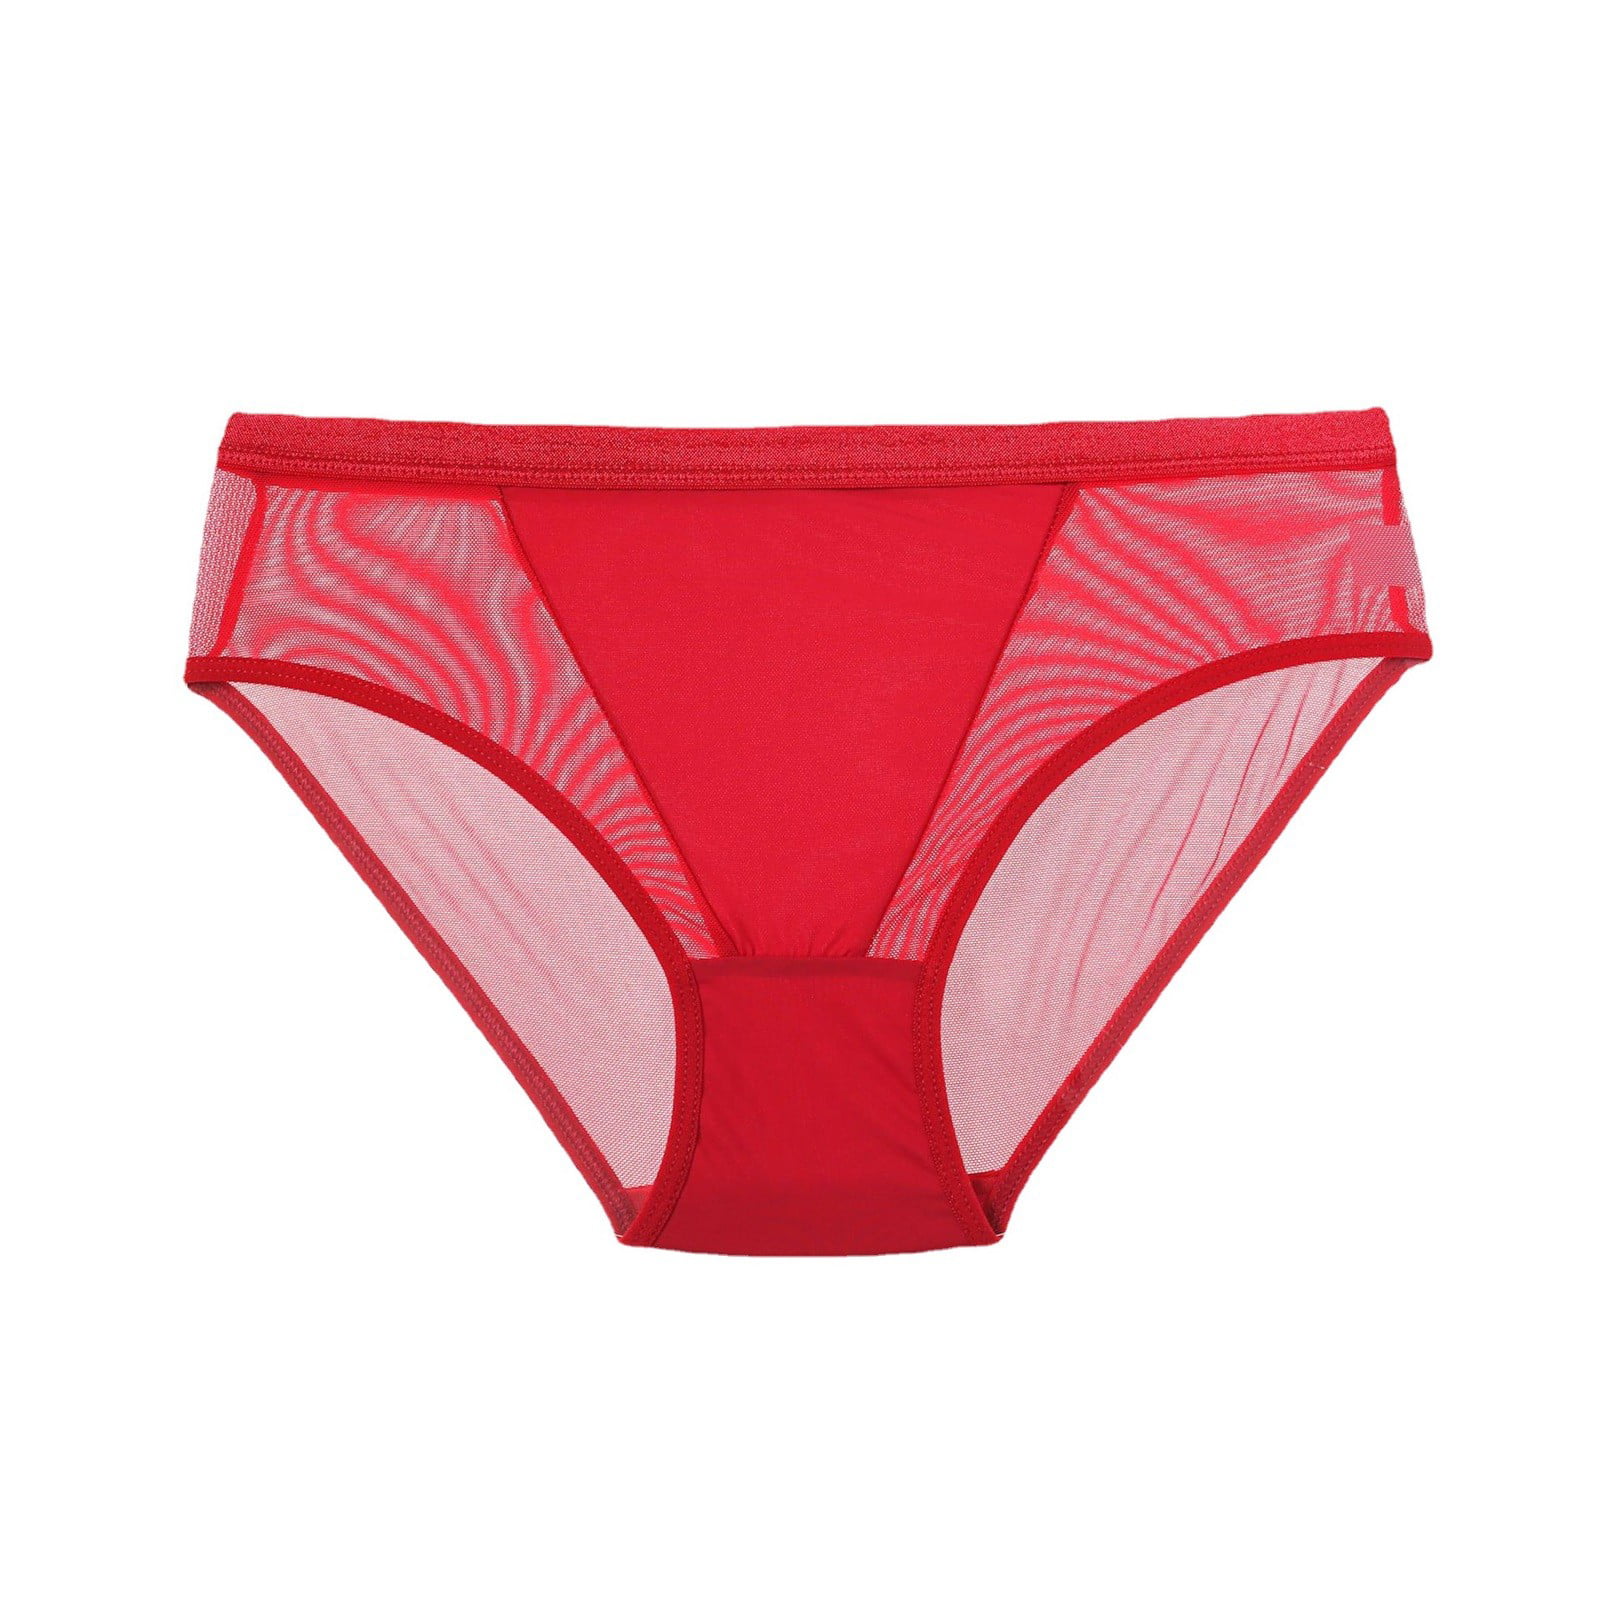 CLZOUD Pantys for Women Nylon,Spandex Women's Low Waist Mesh Briefs Solid  Color Cotton Crotch Underwear Panties S